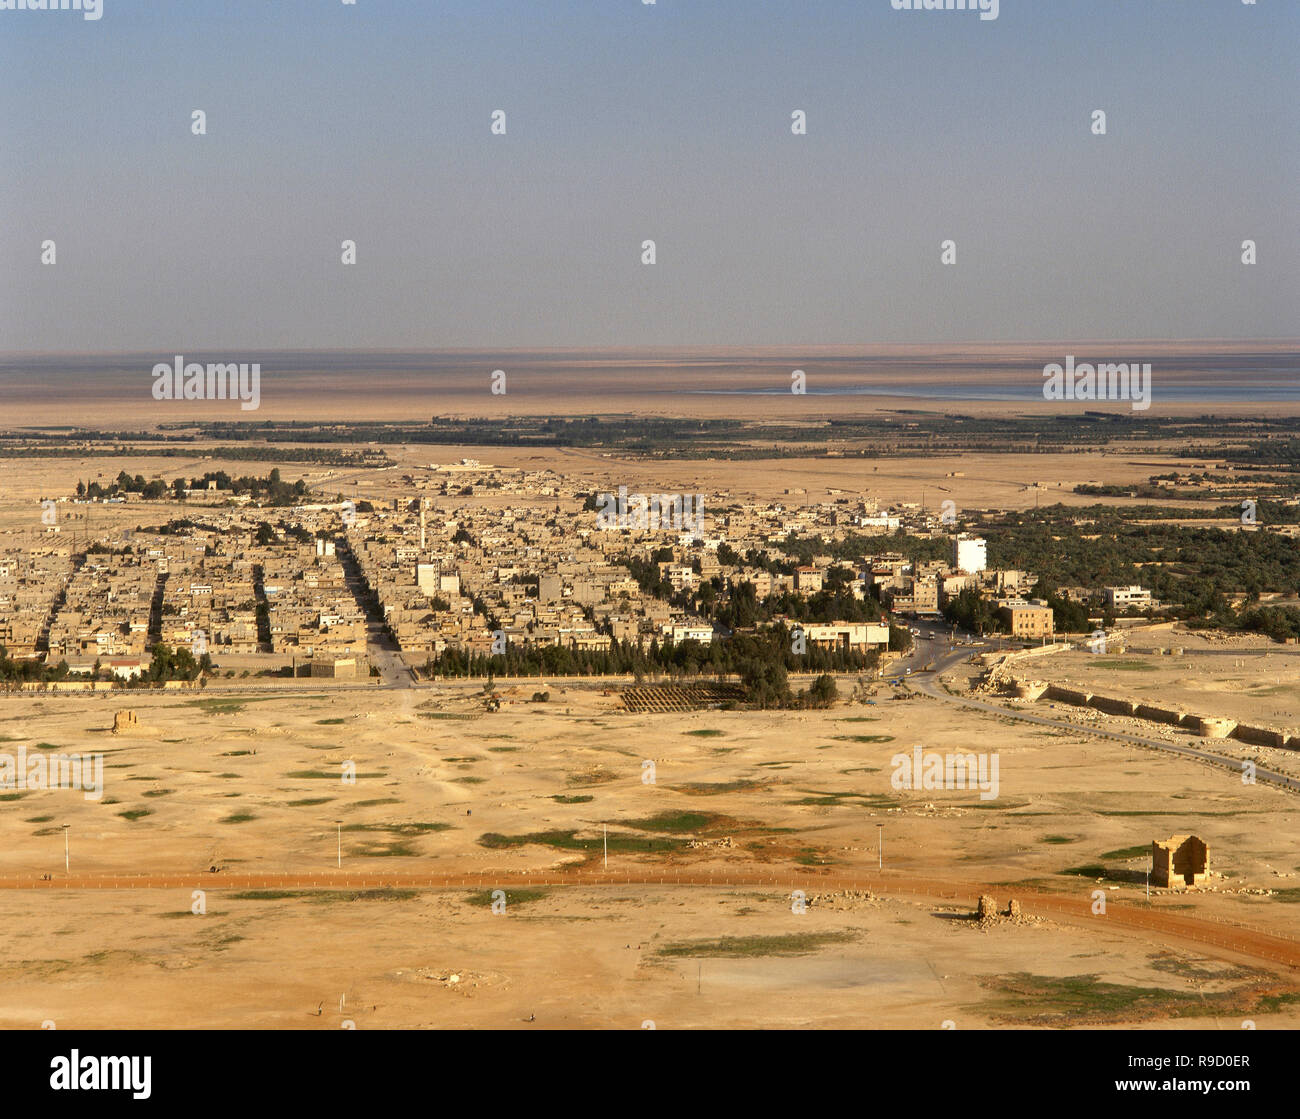 Arabische Republik Syrien. Tadmur, in der Nähe von antiken Palmyra/Tadmor. Panoramablick auf die Landschaft. Foto vor dem syrischen Bürgerkrieg. Stockfoto